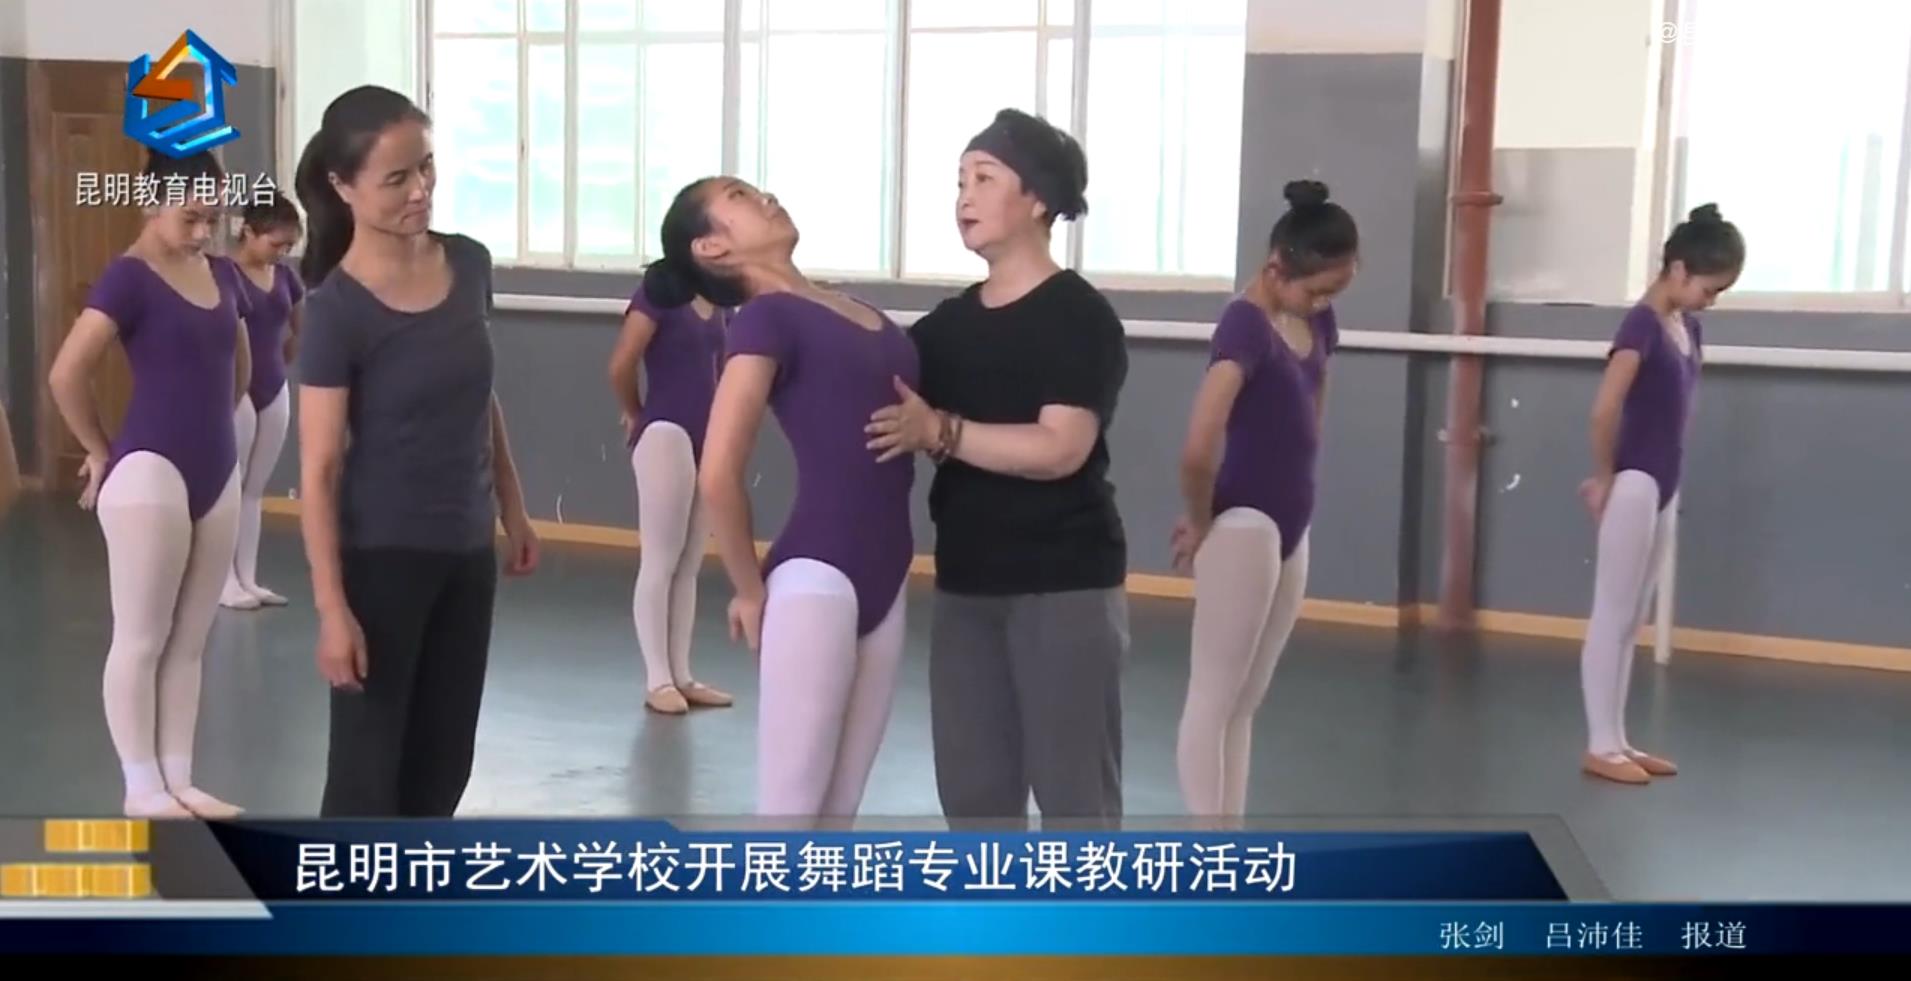 【校园动态】昆明市艺术学校开展舞蹈专业课教研活动